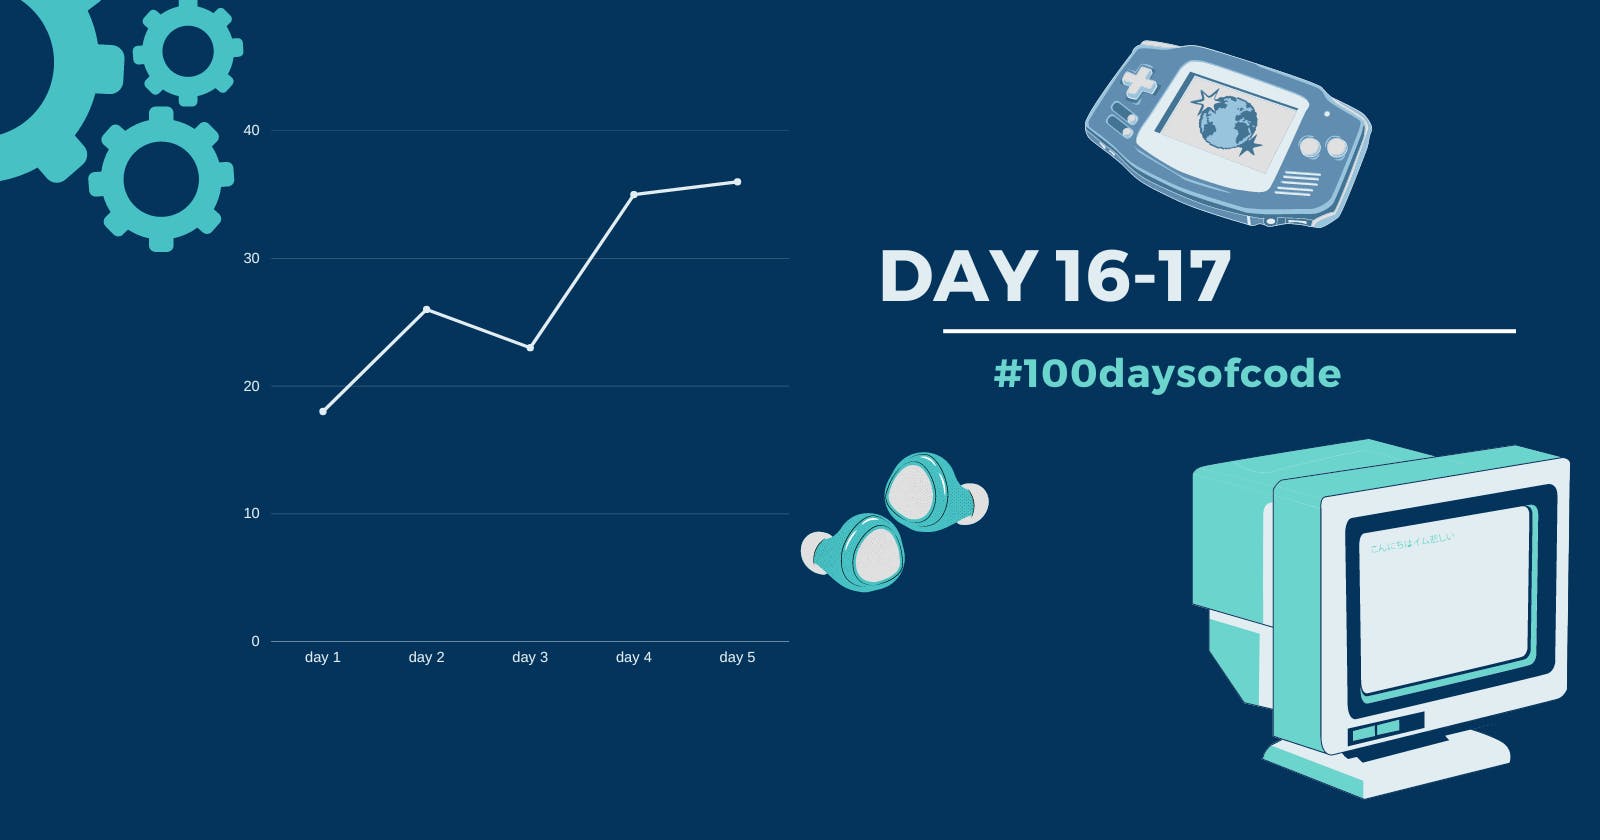 Day 16-17 in #100daysofcode challenge